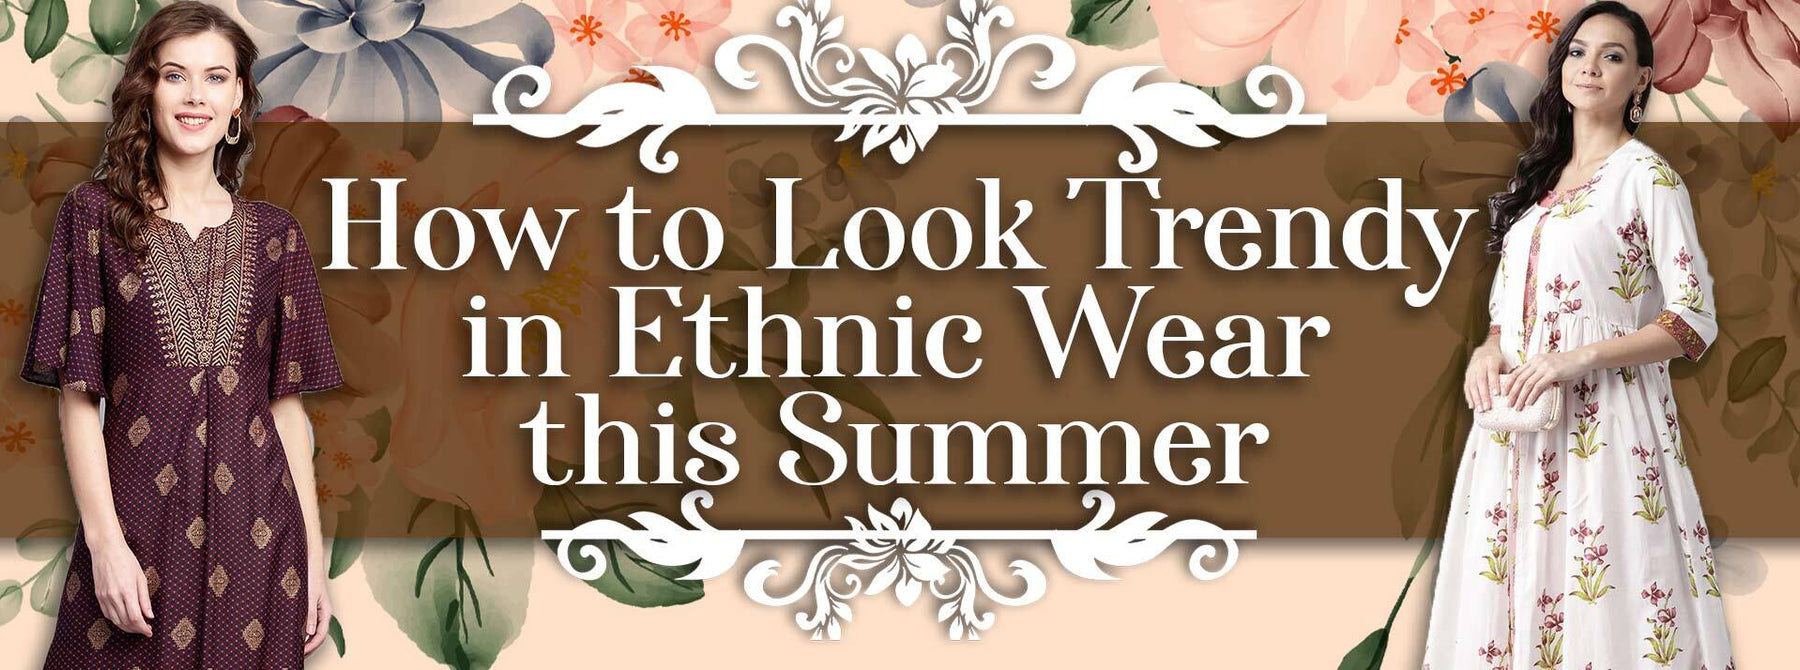 How To Look Trendy in Ethnic Wear in Summer?